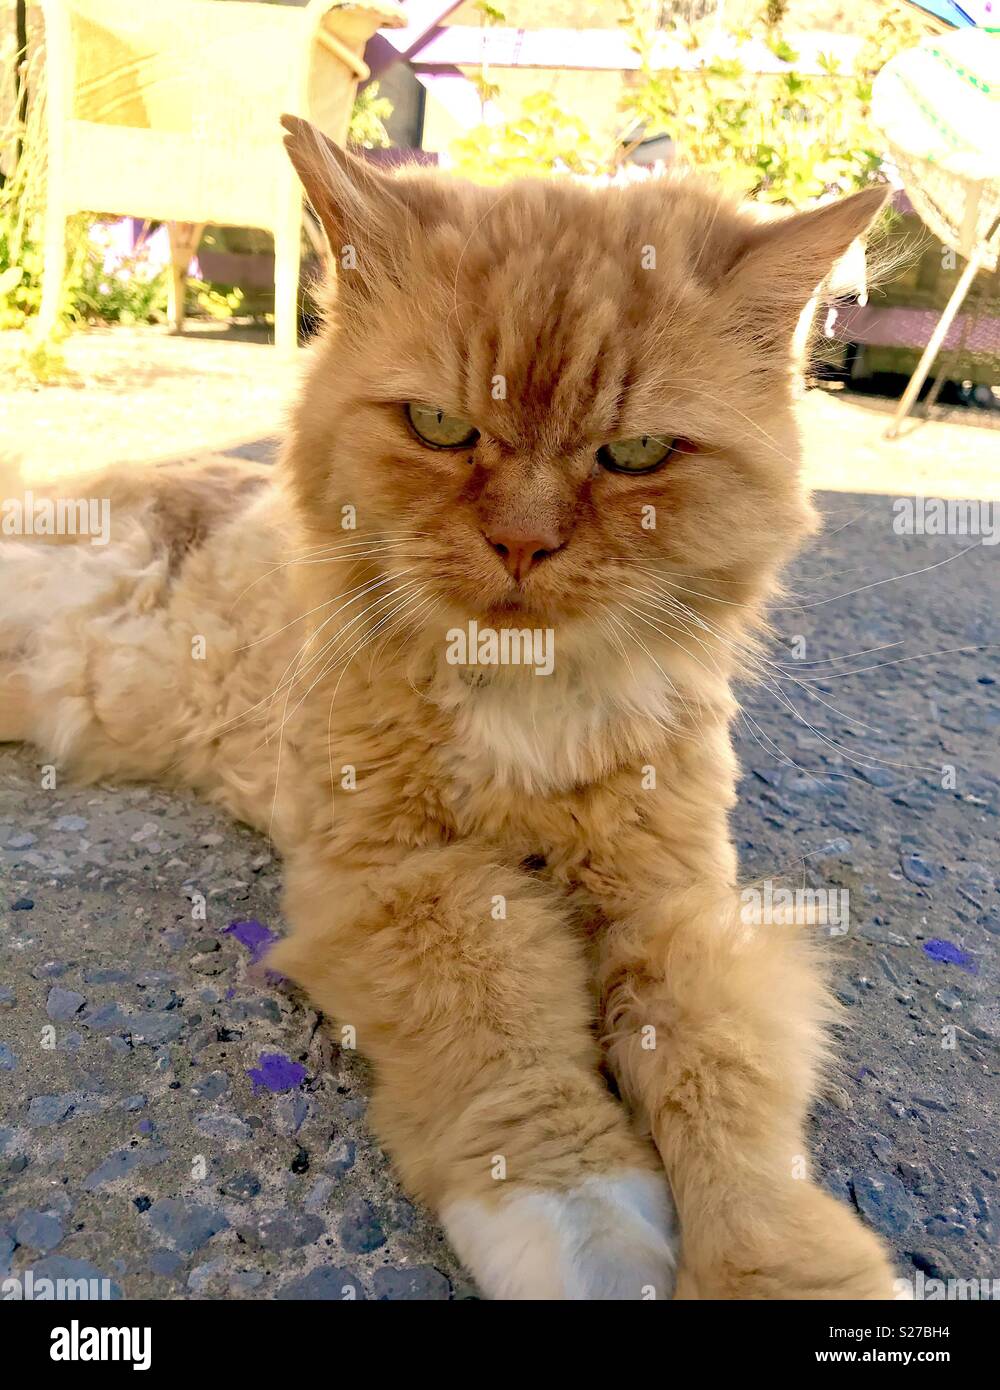 Mon chat gingembre farniente au soleil d'été et probablement de penser que je suis son animal non pas l'inverse Banque D'Images